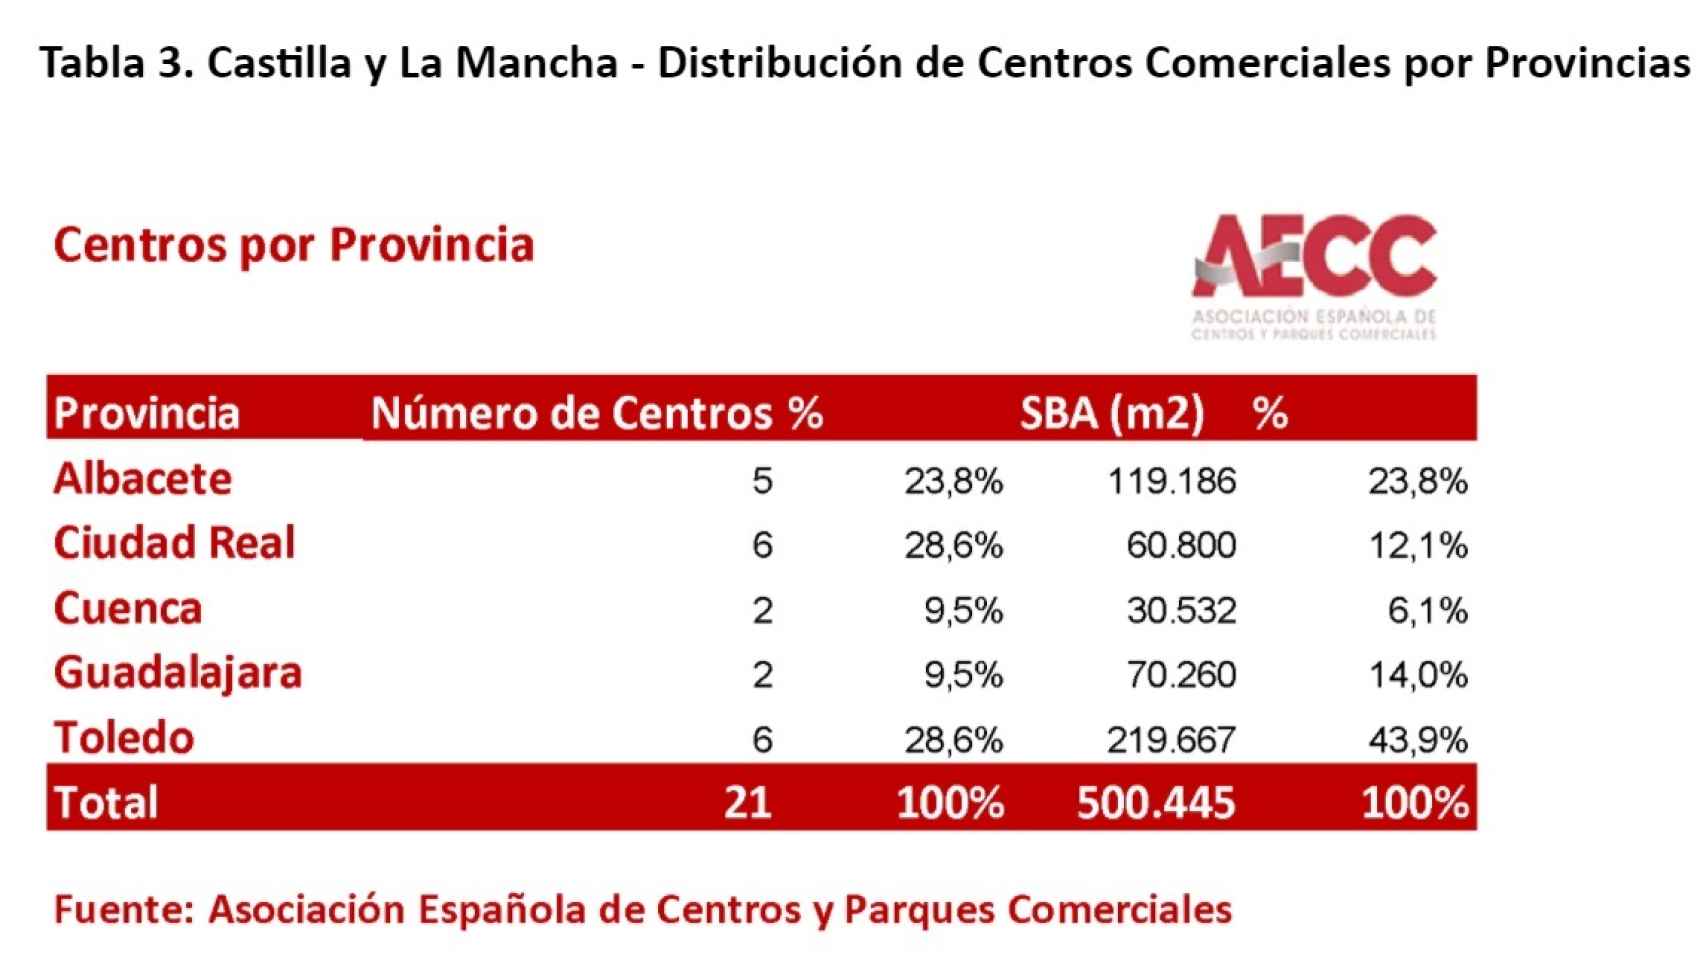 Centros Comerciales en Castilla La Mancha. Fuente: AECC.